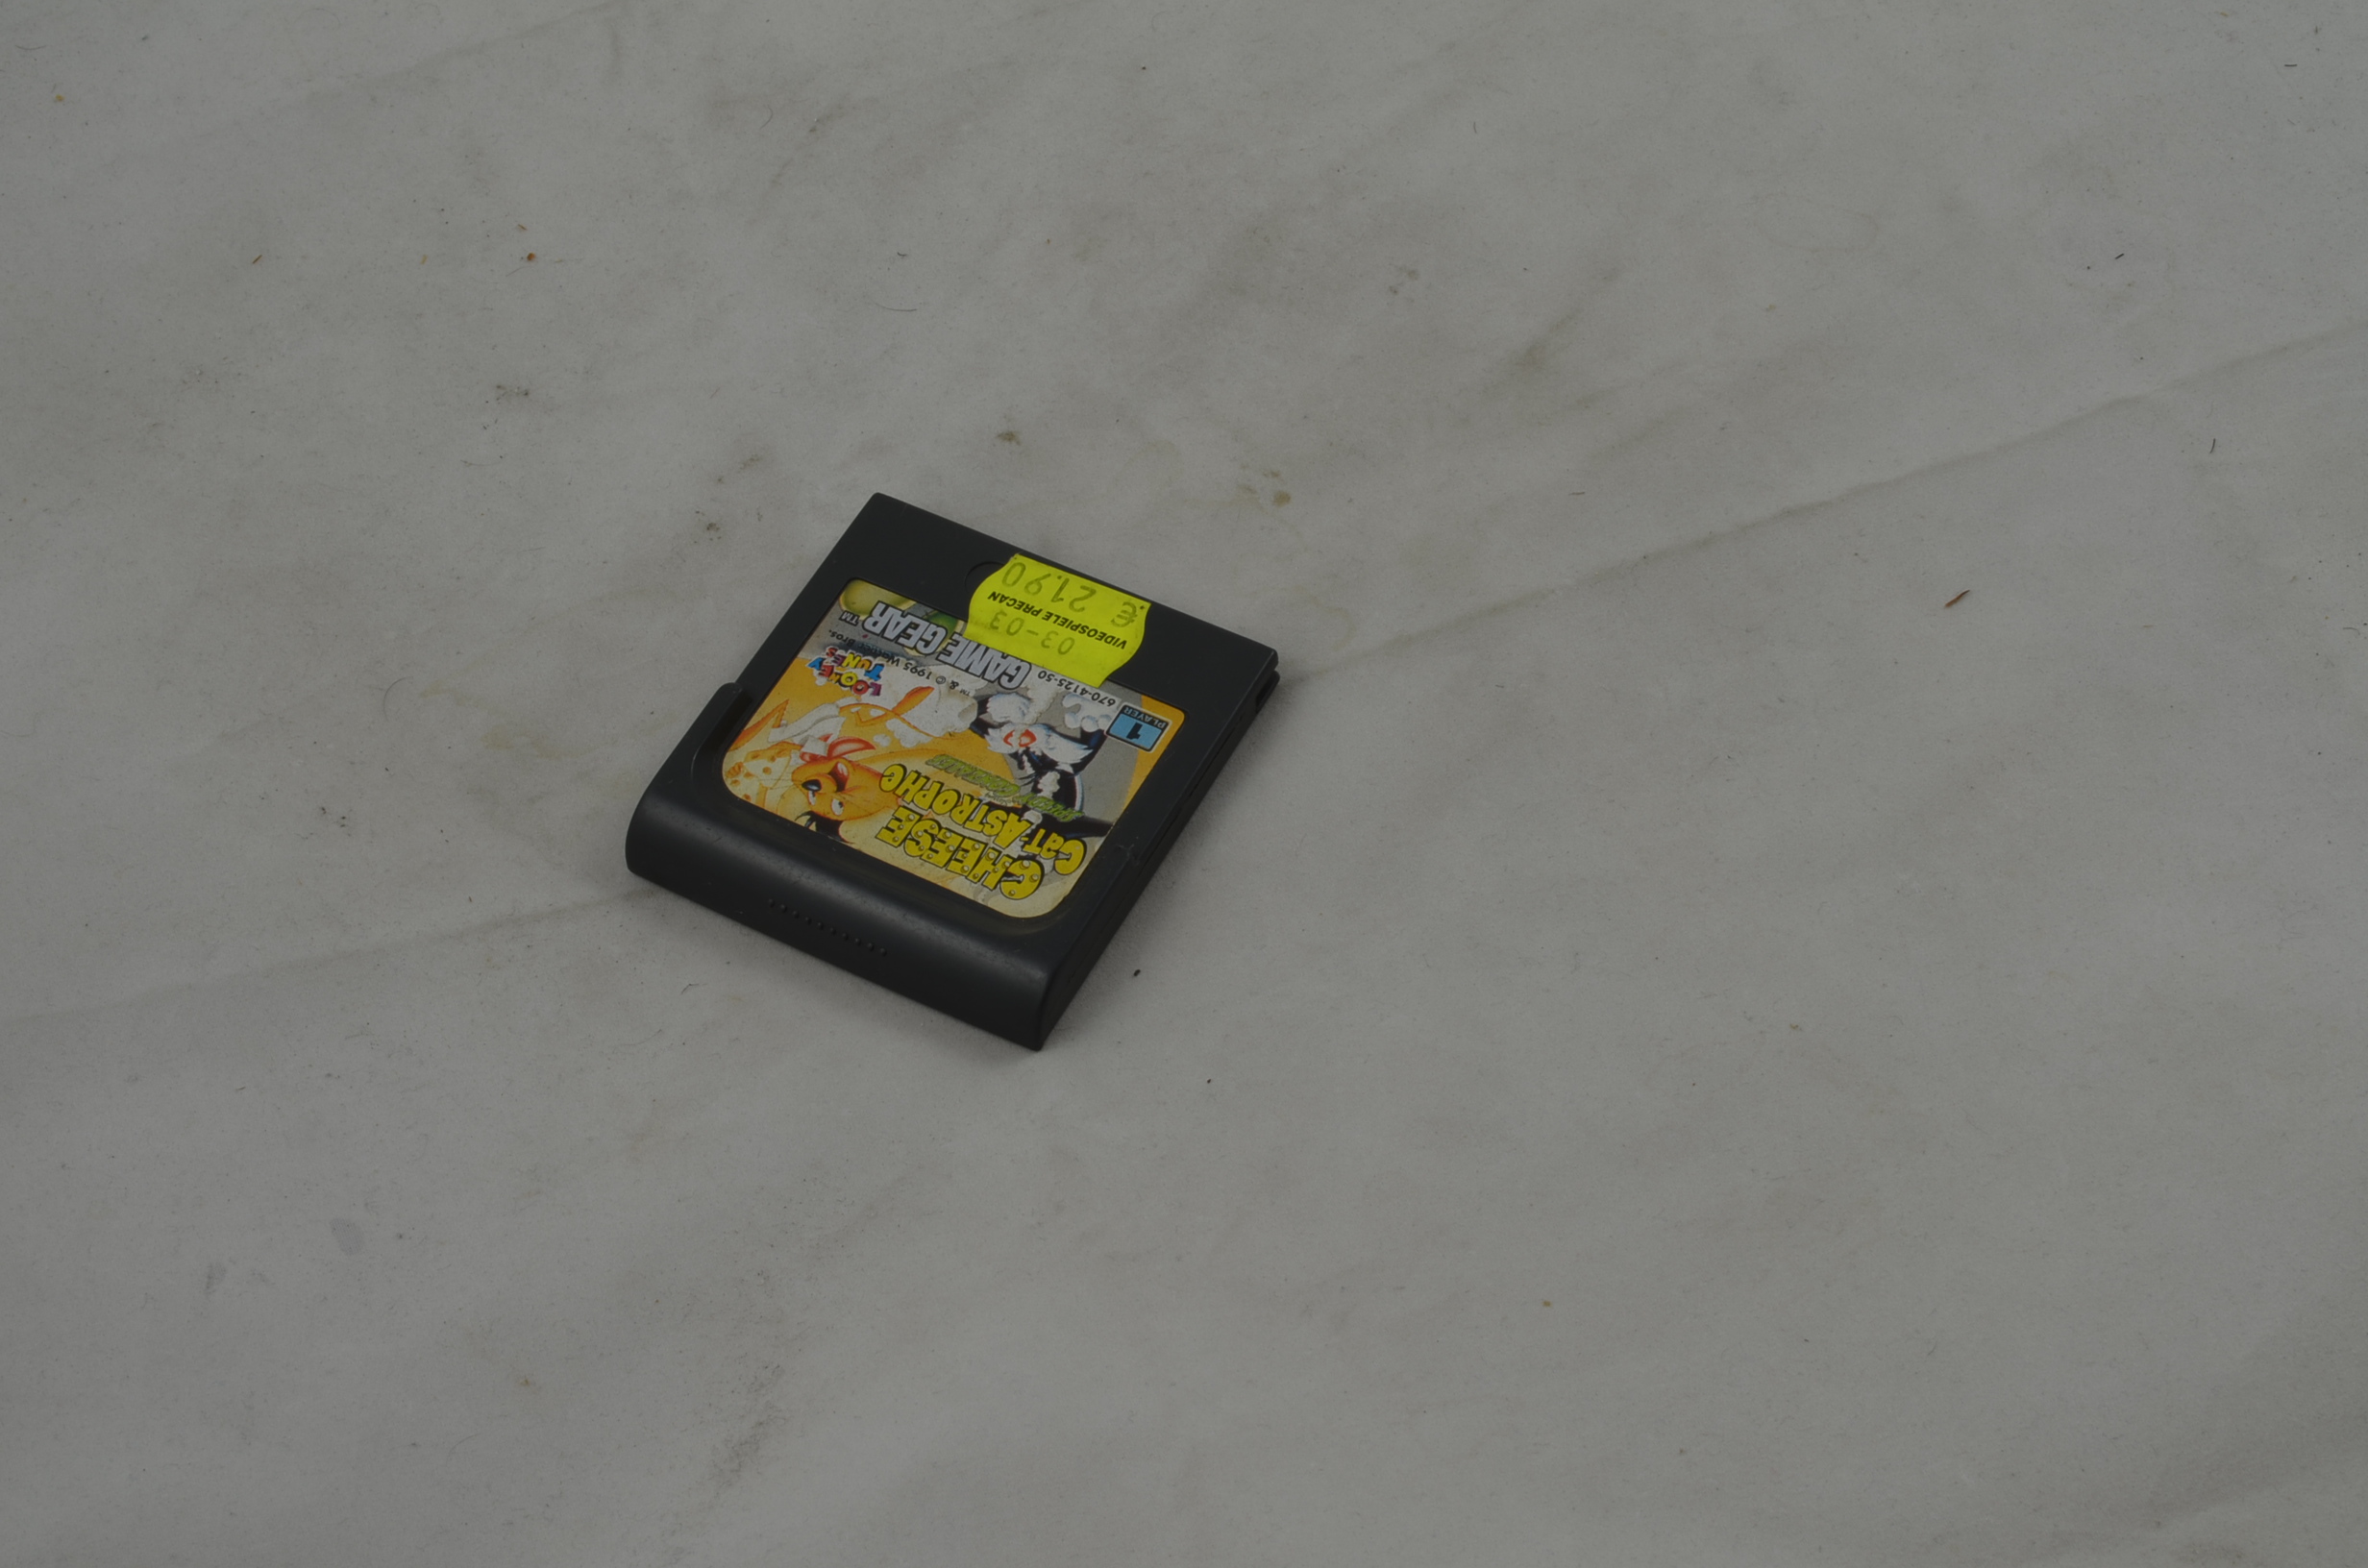 Produktbild von Cheese Cat-Astrophe Starring Speedy Gonzales Game Gear Spiel